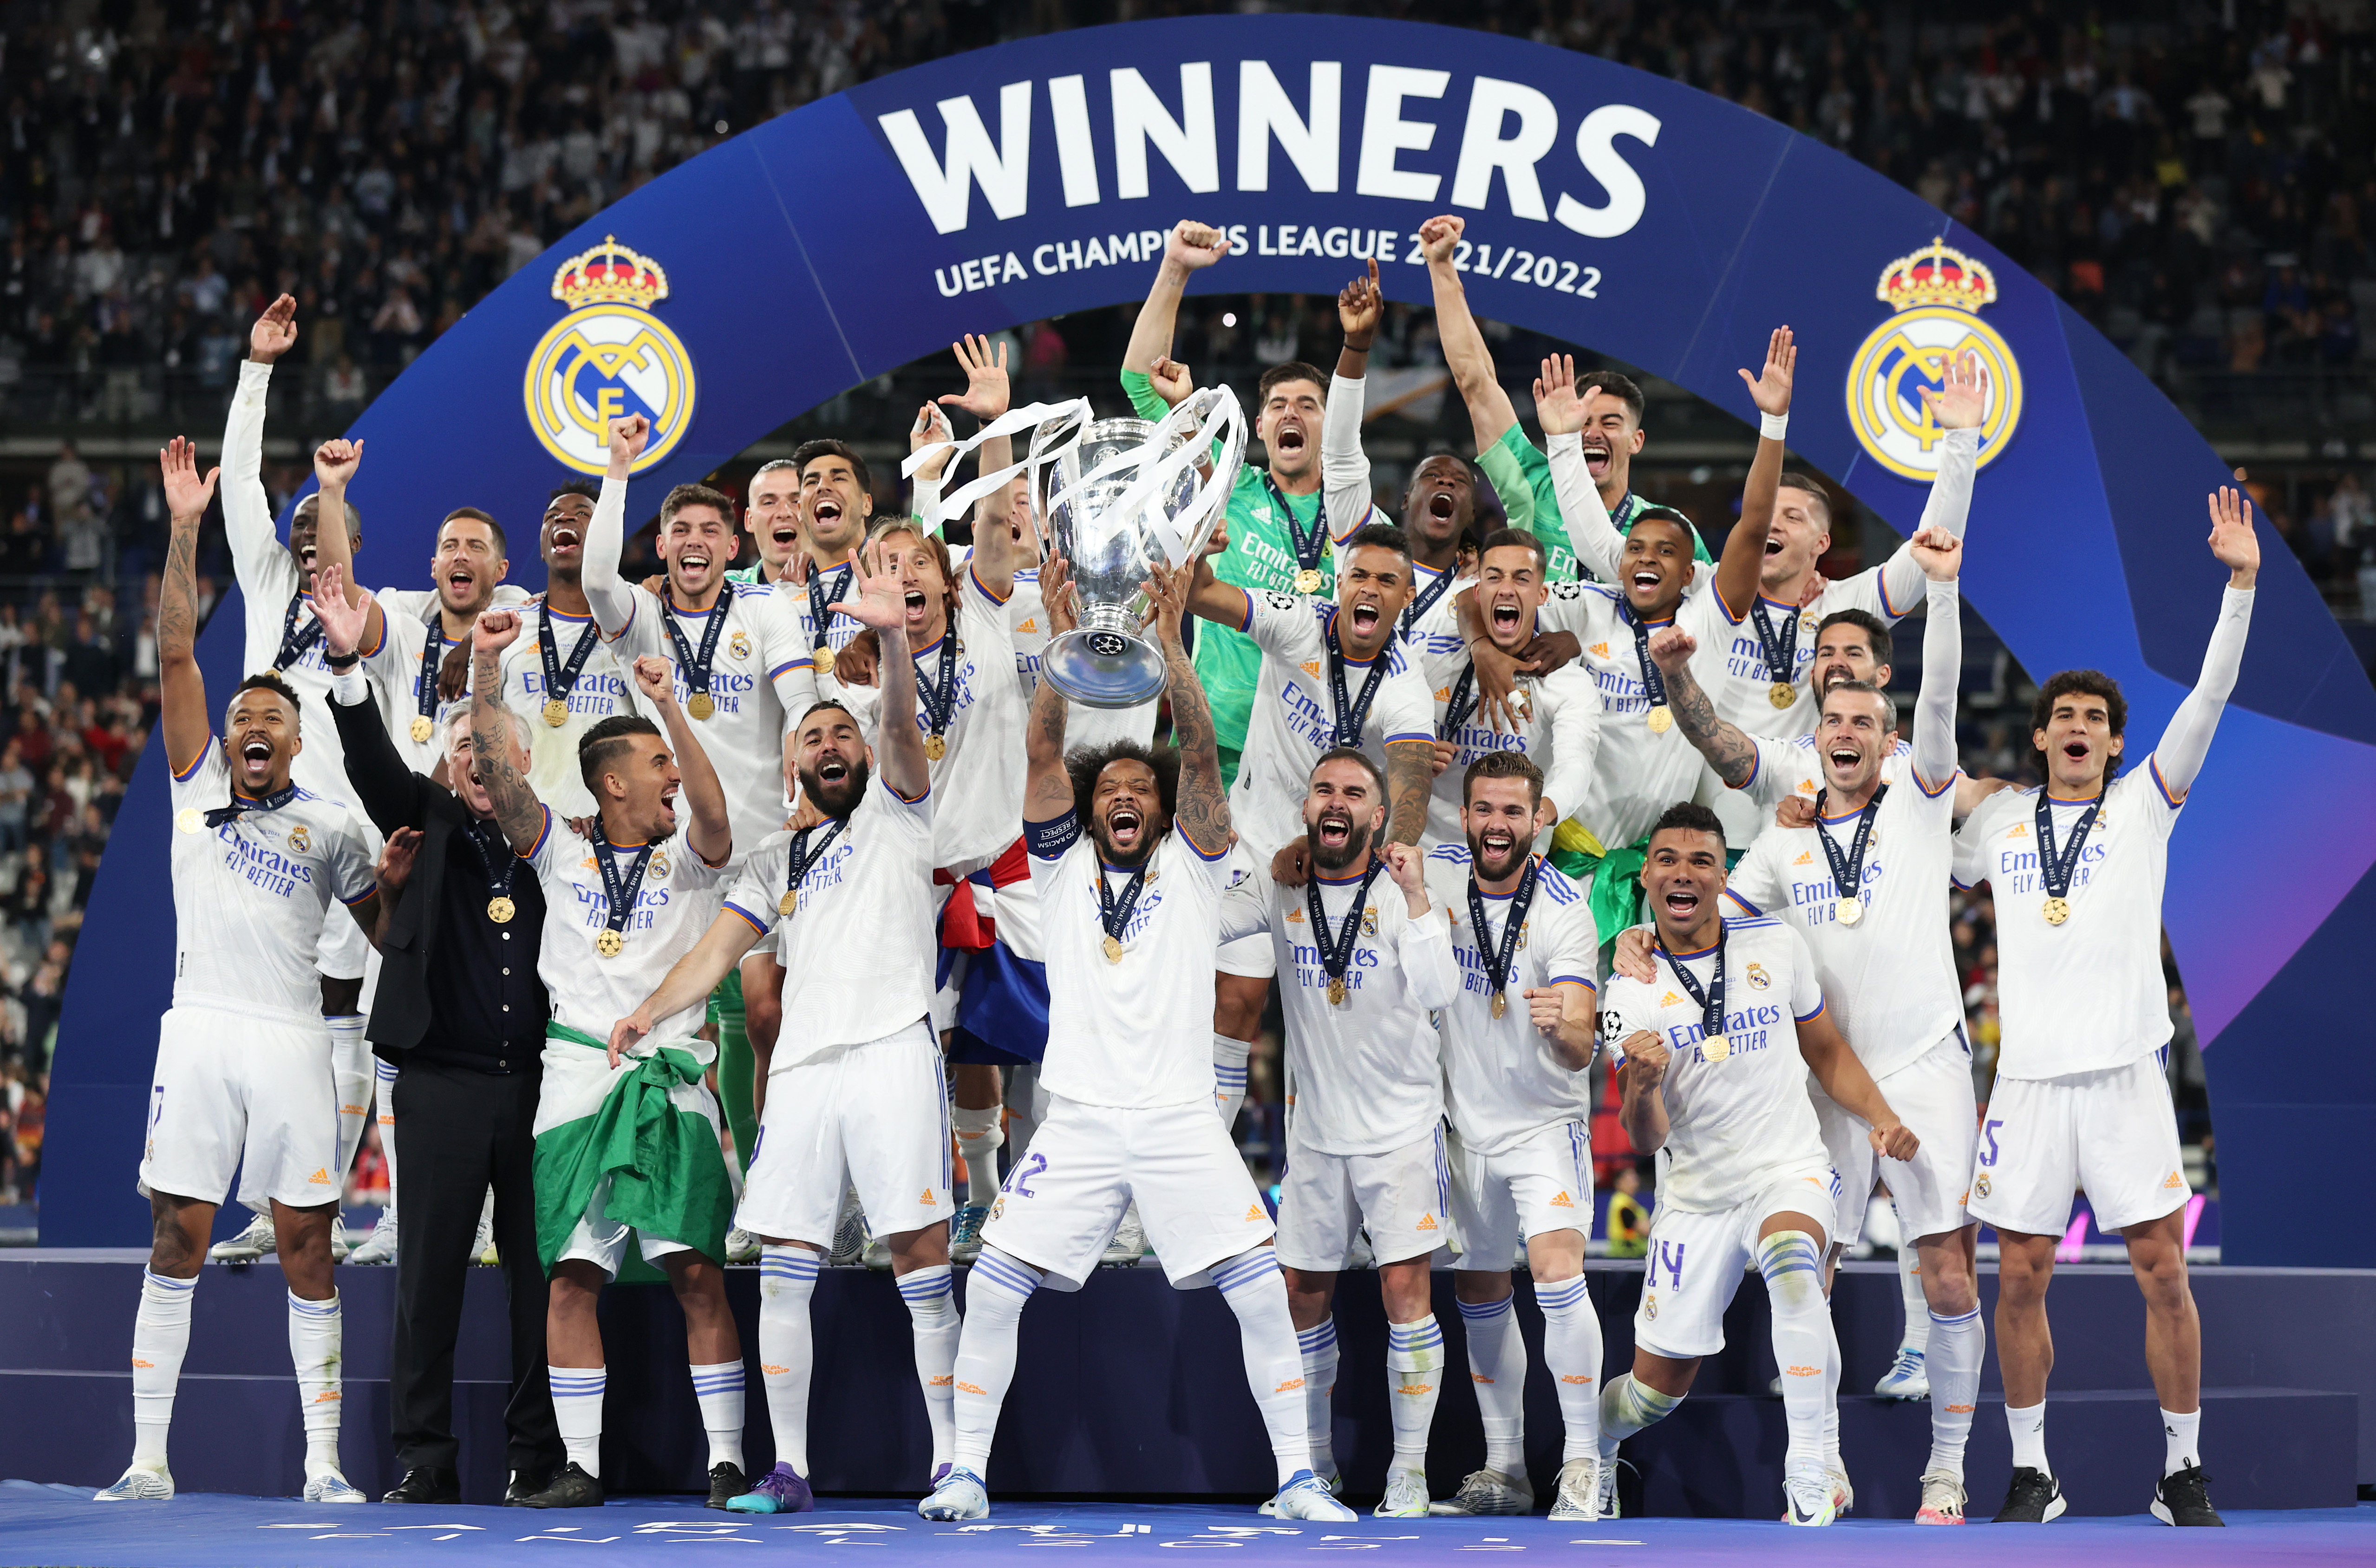 Кубок чемпионов по футболу 2023 24. Реал Мадрид победитель Лиги чемпионов 2022. Реал Мадрид с Кубком ЛЧ 2022. Лига чемпионов 2021-2022 Реал Мадрид. Реал Мадрид выиграл Лигу чемпионов 2021-2022.